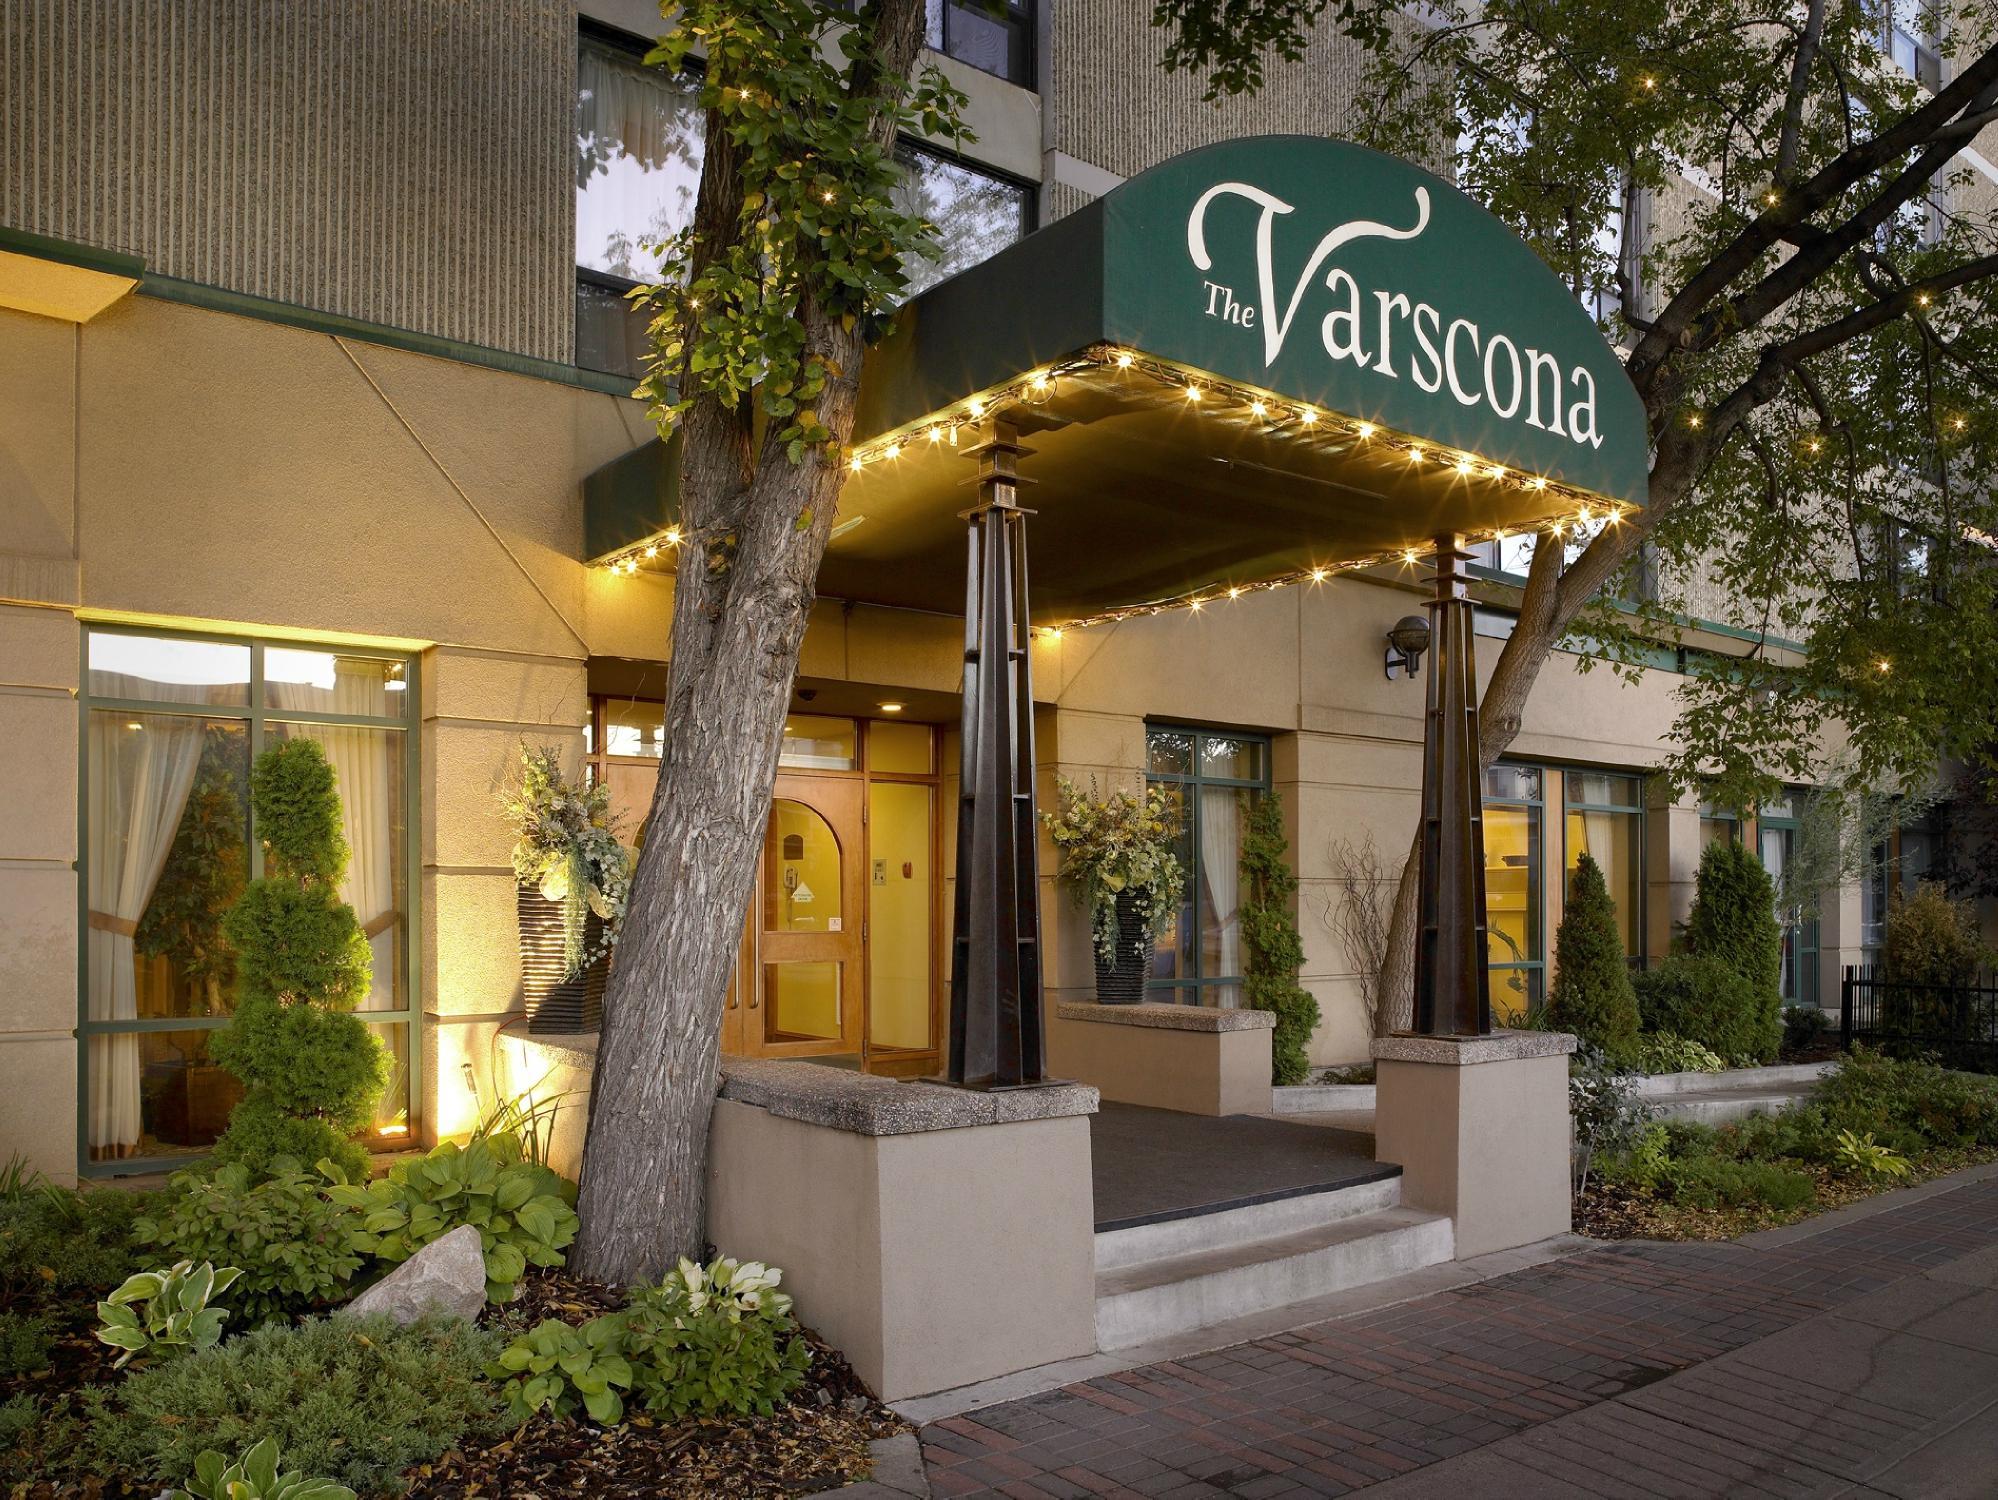 Photo of Varscona Hotel on Whyte, Edmonton, AB, Canada